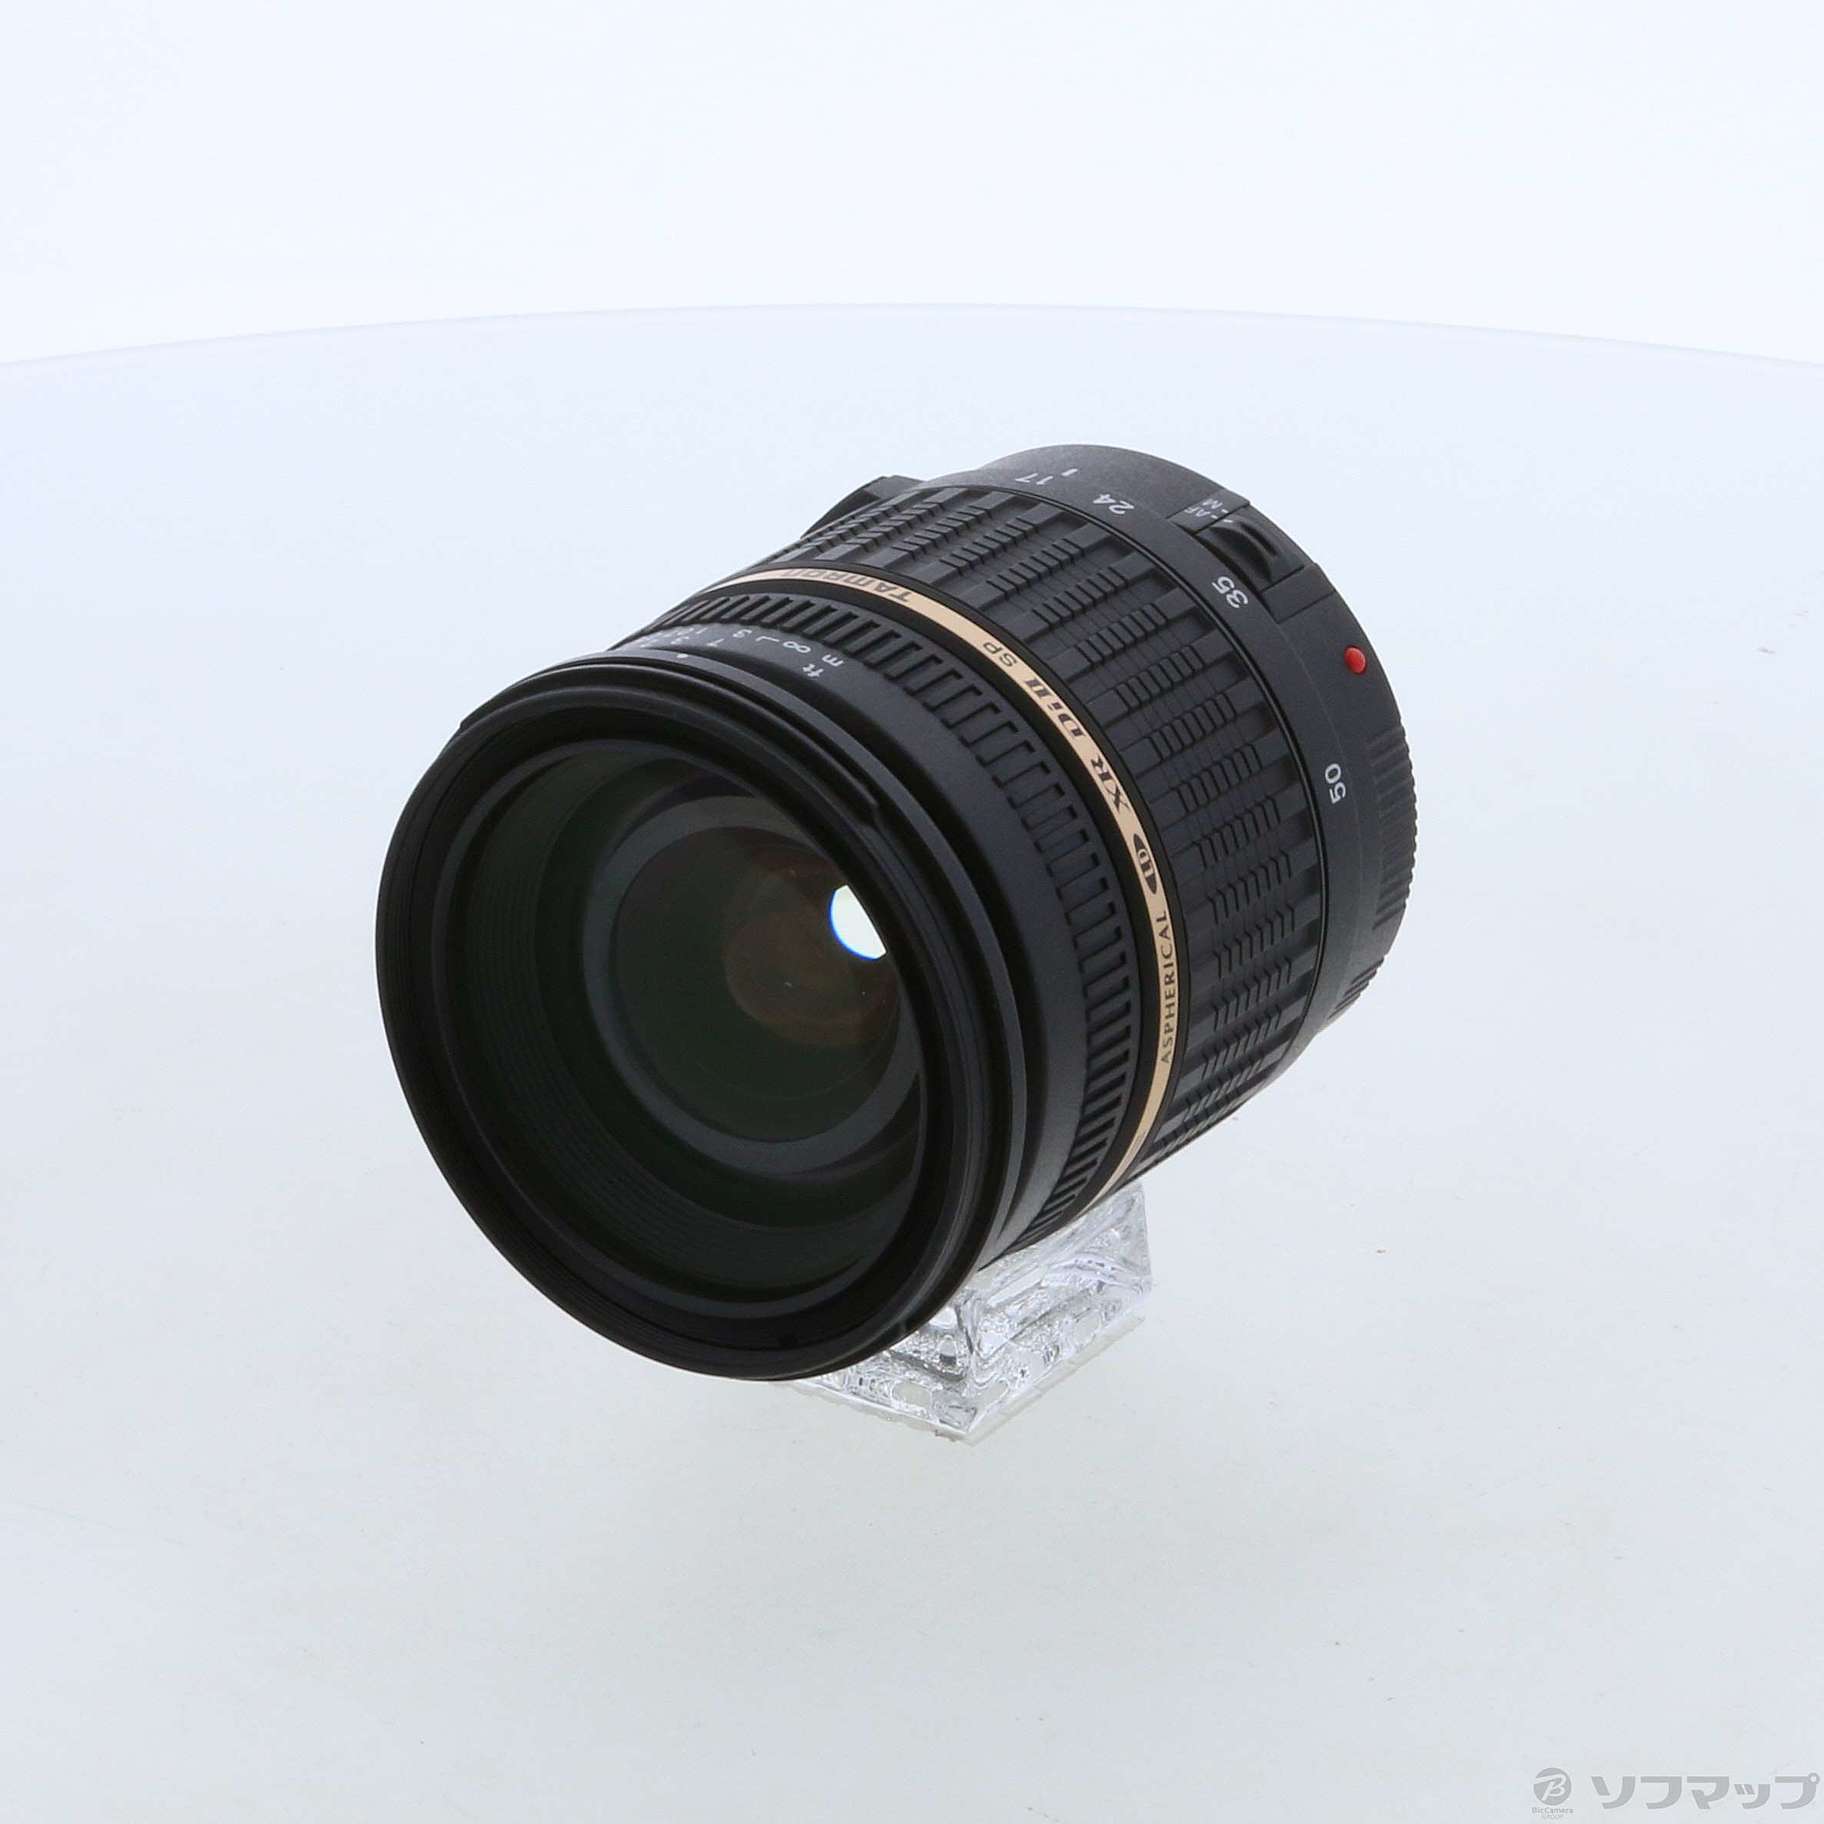 〔展示品〕〔展示品〕 TAMRON AF 17-50mm F2.8 XR Di II (A16E) (Canon用) (レンズ)